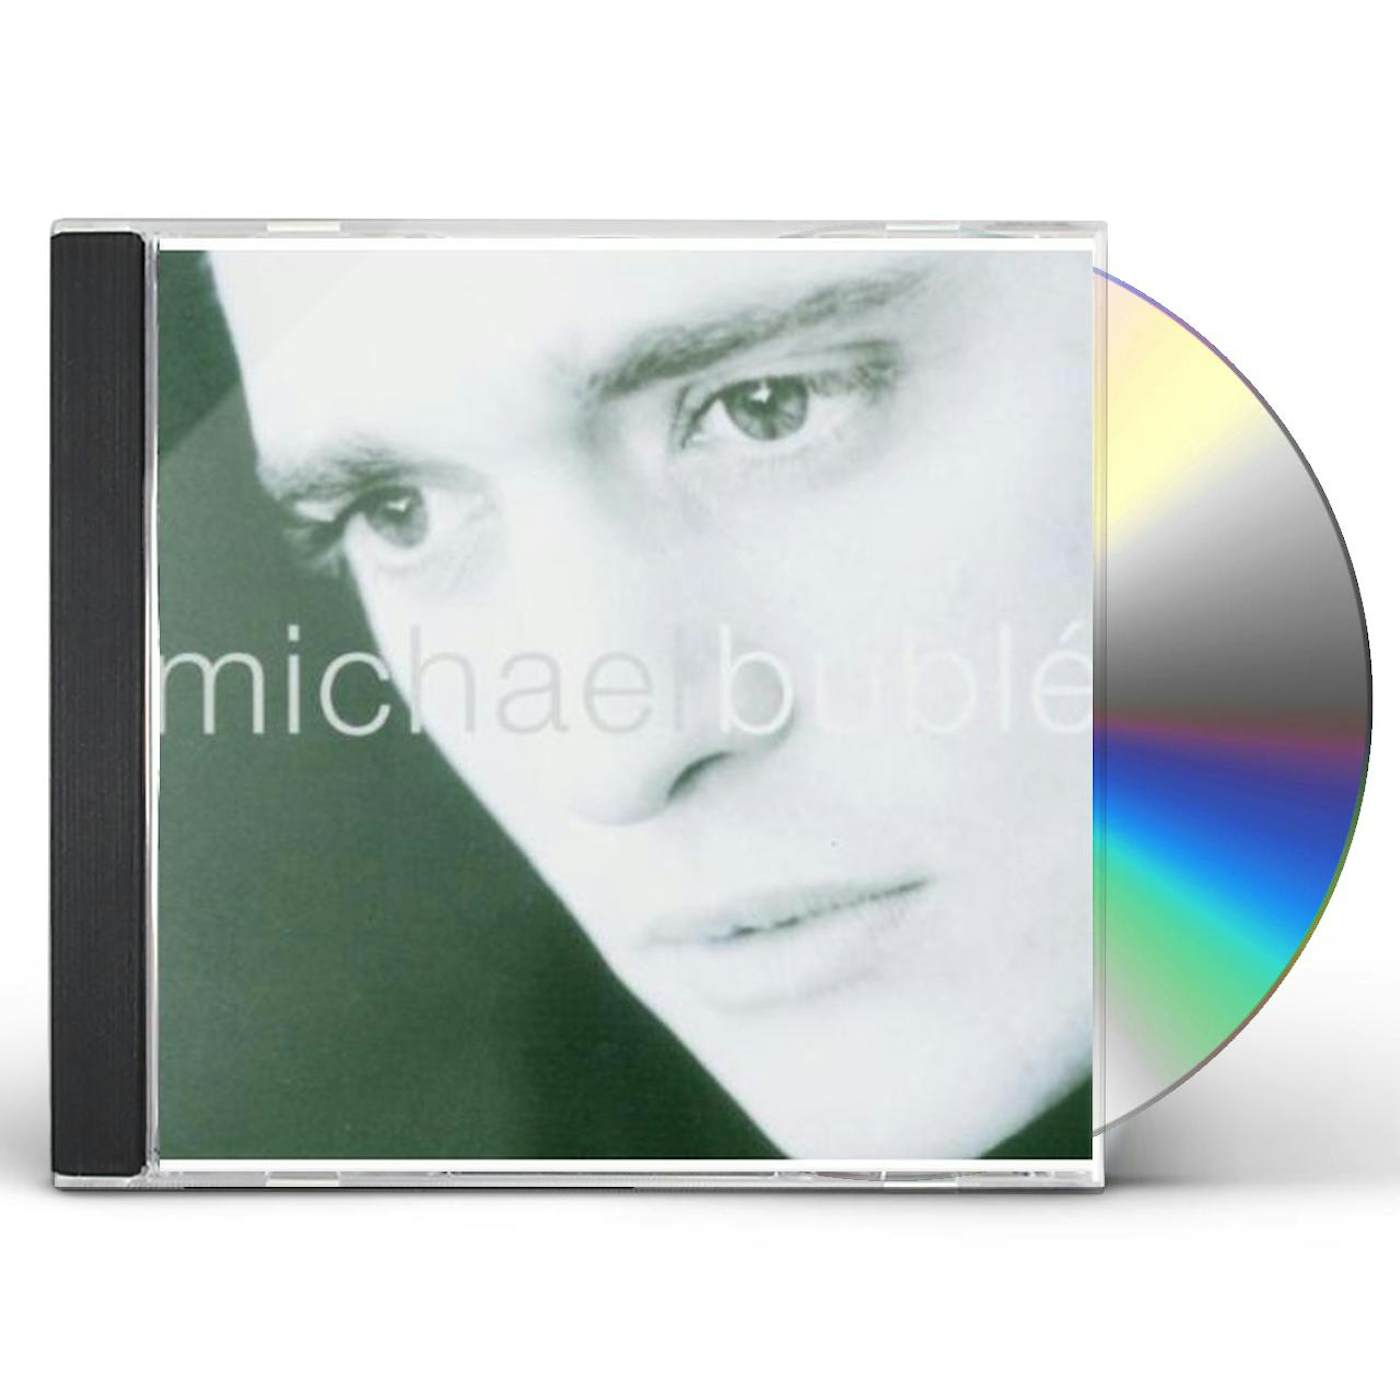 Michael Bublé CD